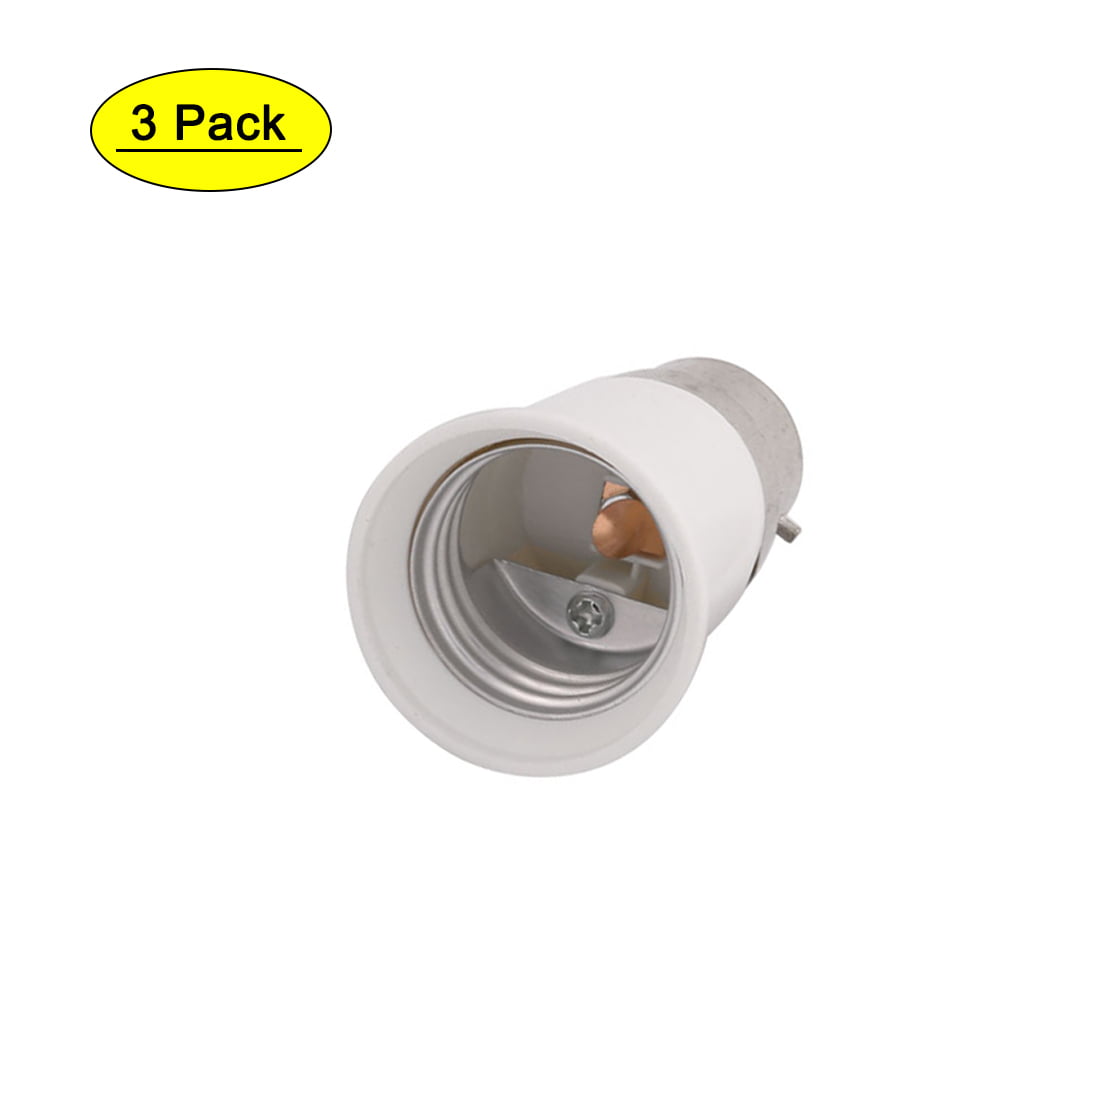 Plastic B22 to E27 Base LED Light Lamp Bulb Socket Adapter sx 